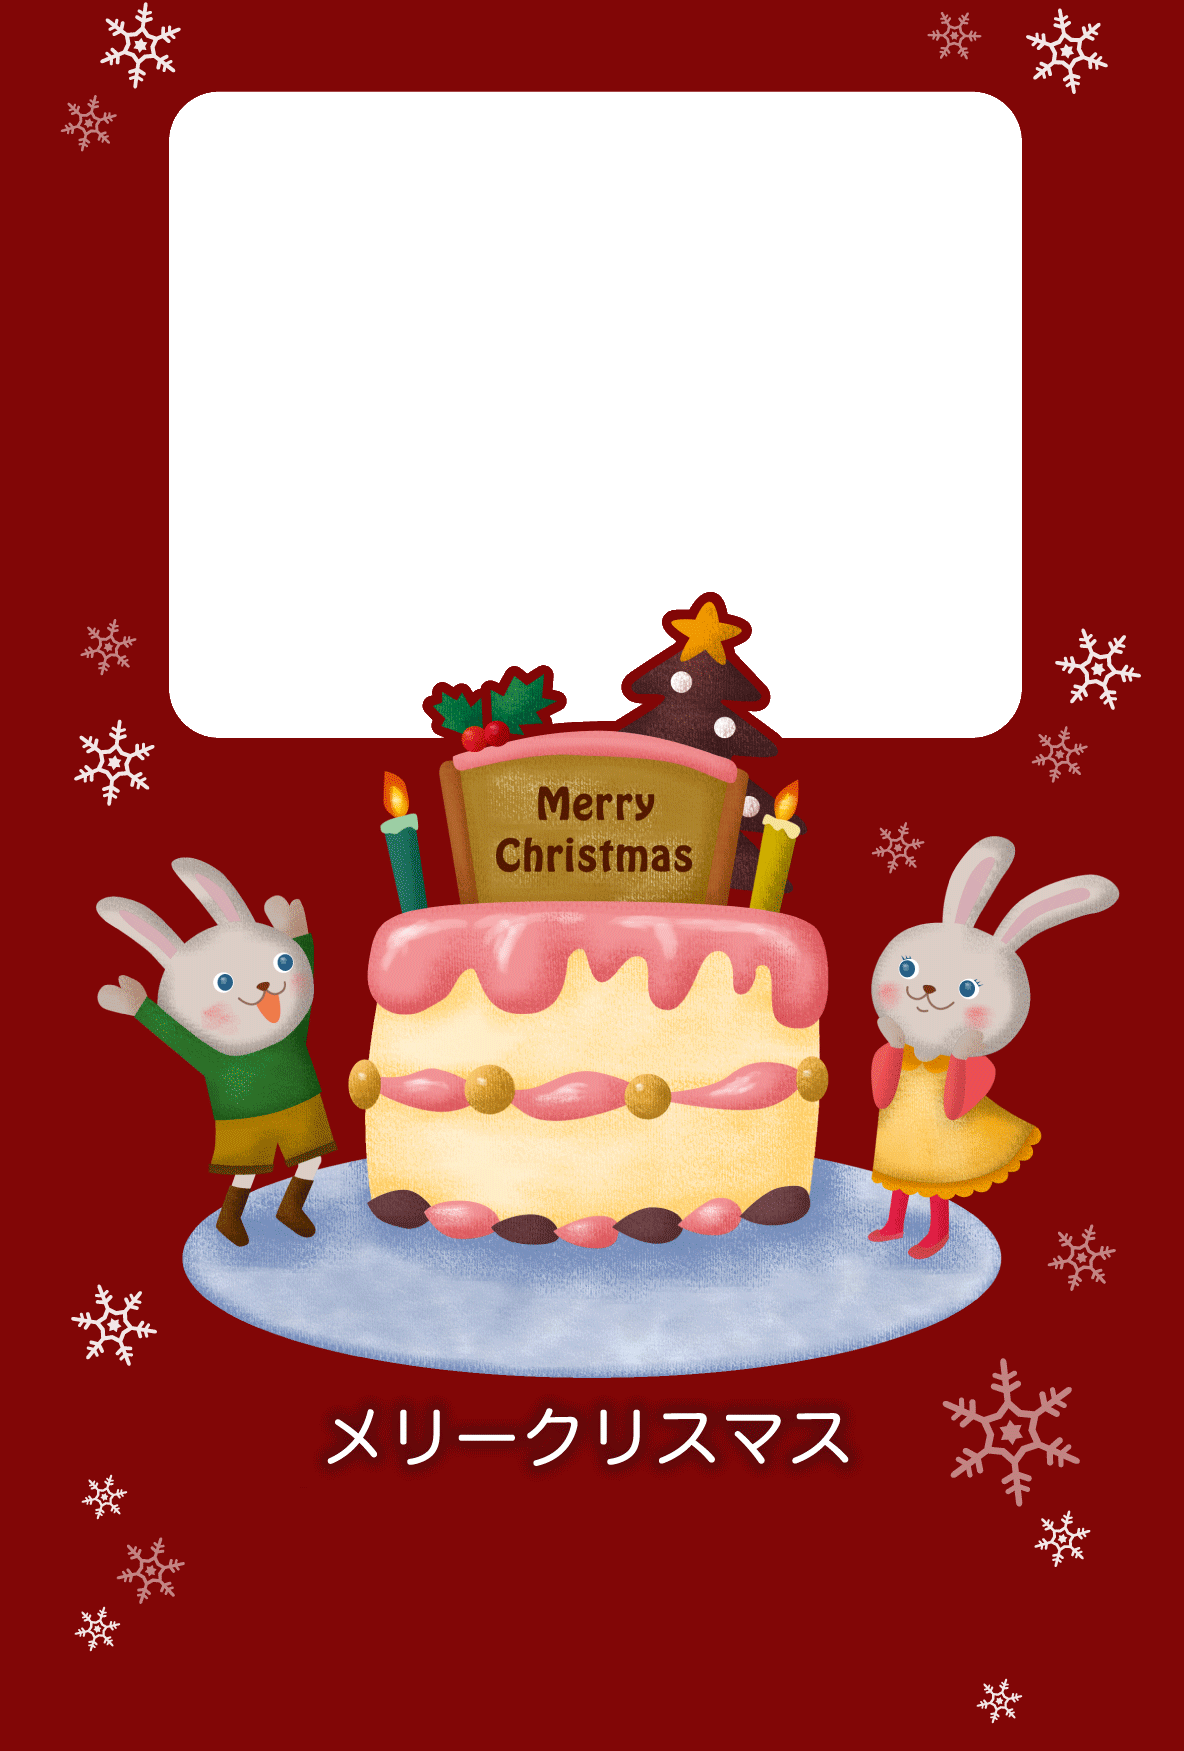 クリスマスカード Merry Christmas うさぎ 写真用 無料テンプレート印刷 プリントミュージアム